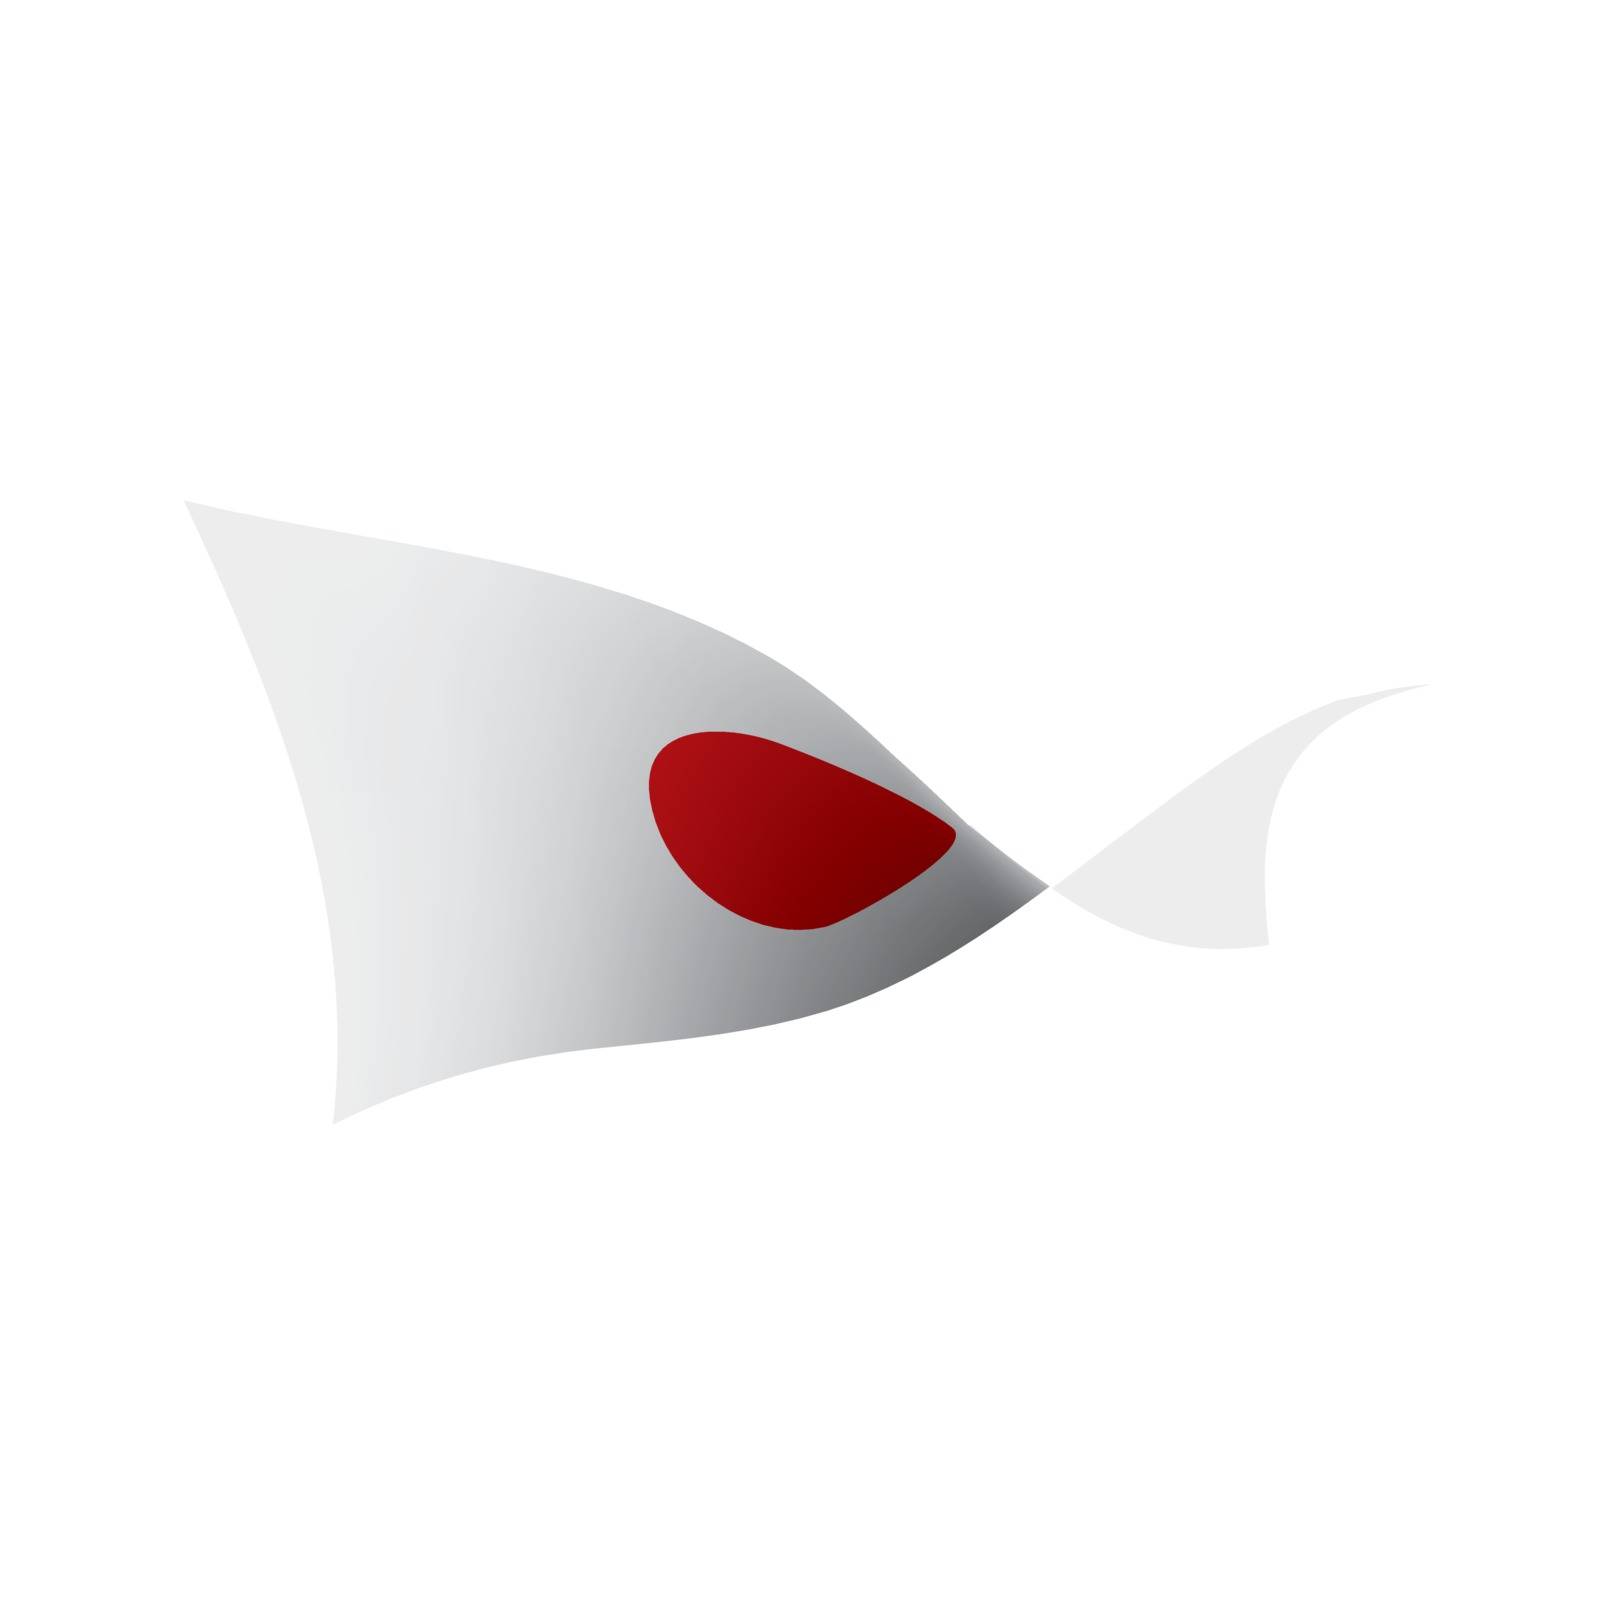 Japan flag, vector illustration by butenkow